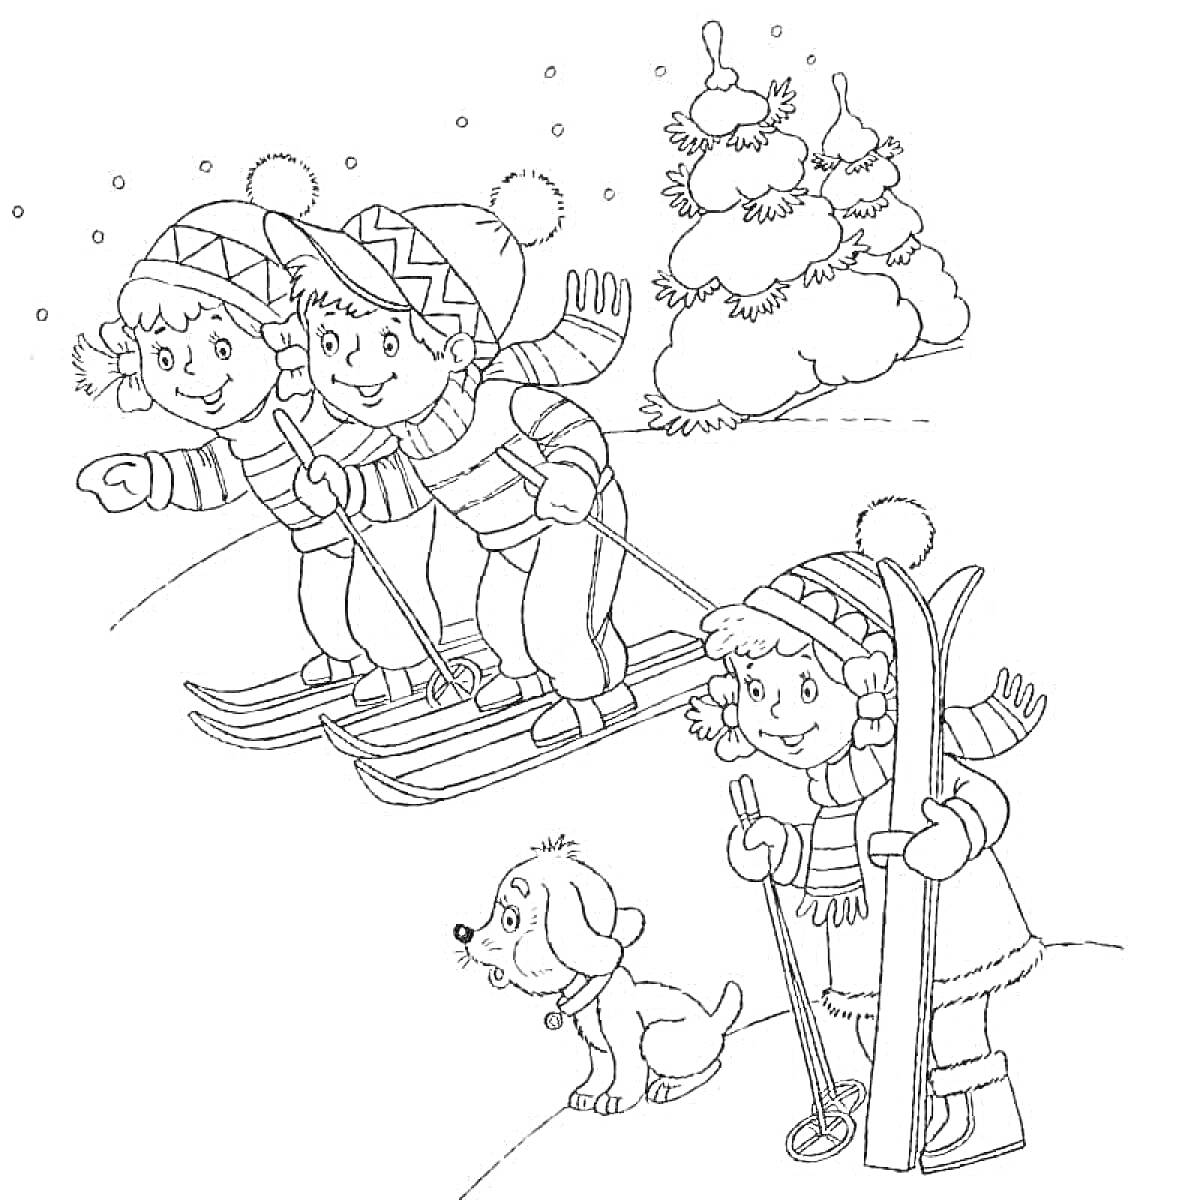 Дети катаются на лыжах, девочка с лыжами и палками, собака, снеговик